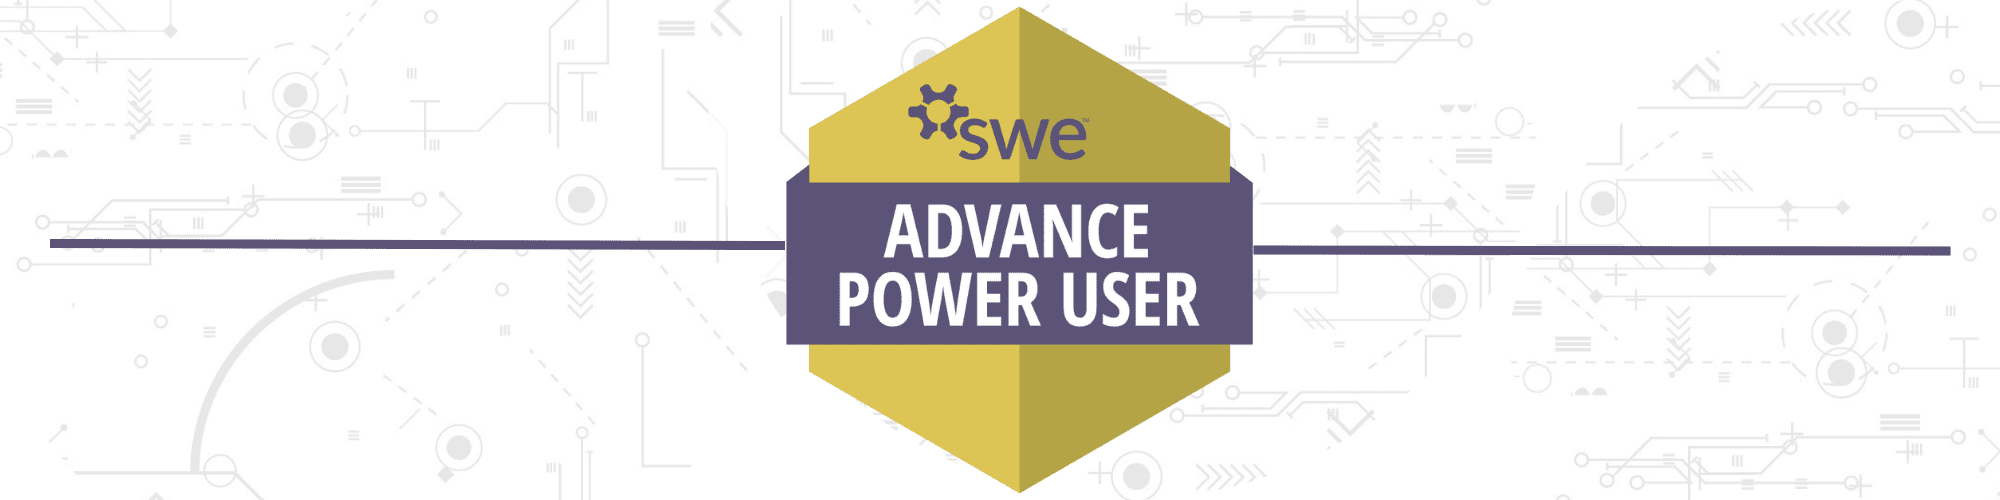 Advance Power User